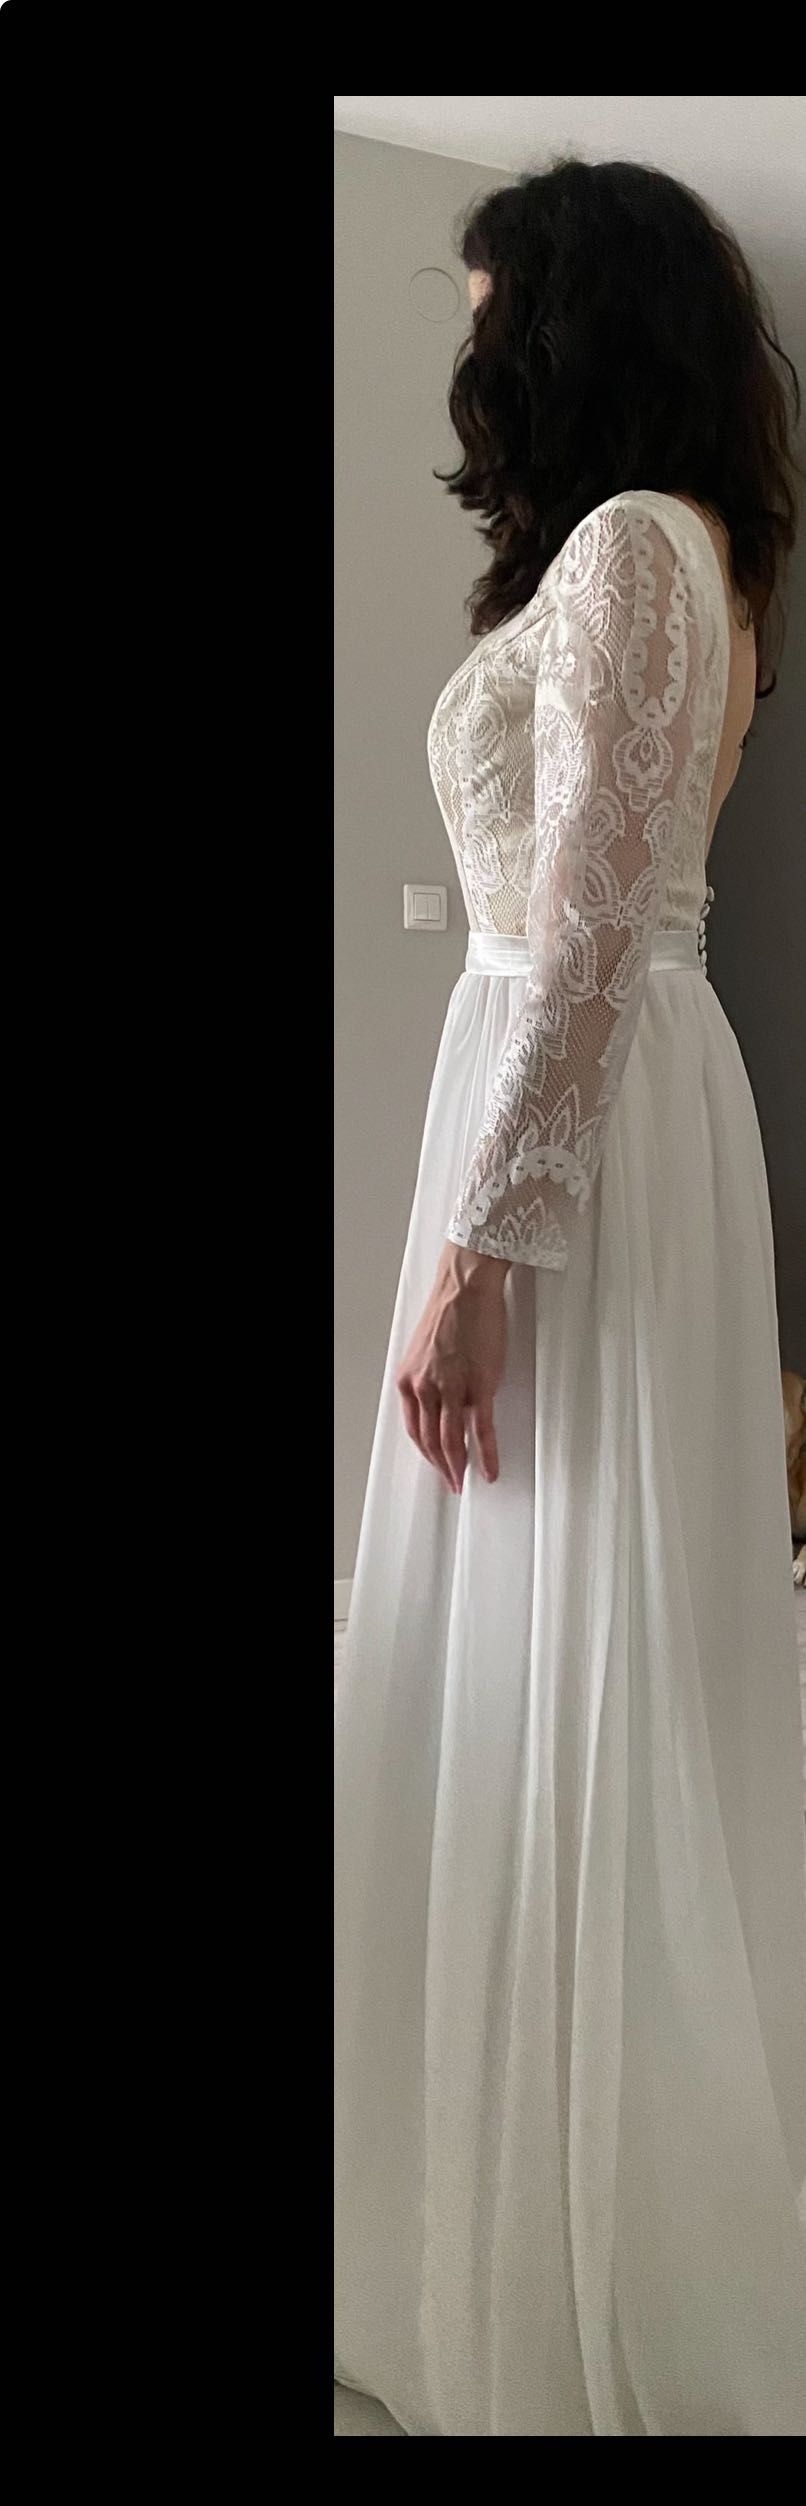 Nowa suknia Ślubna - styl boho, rozmiar 38